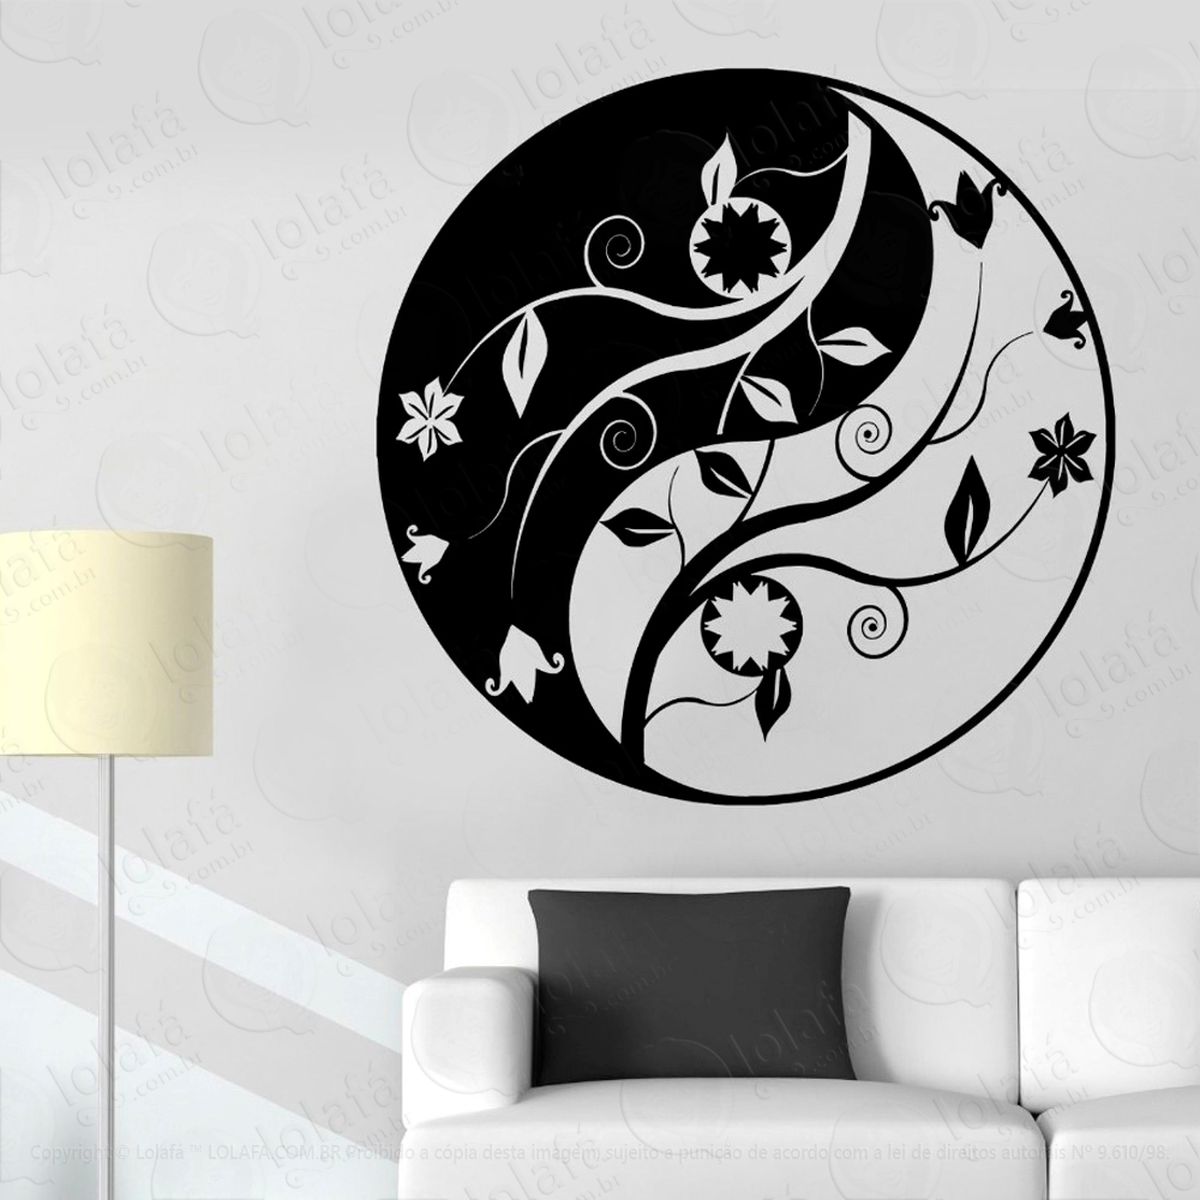 yin-yang floral adesivo de parede decorativo para casa, sala, quarto e vidro - mod:101